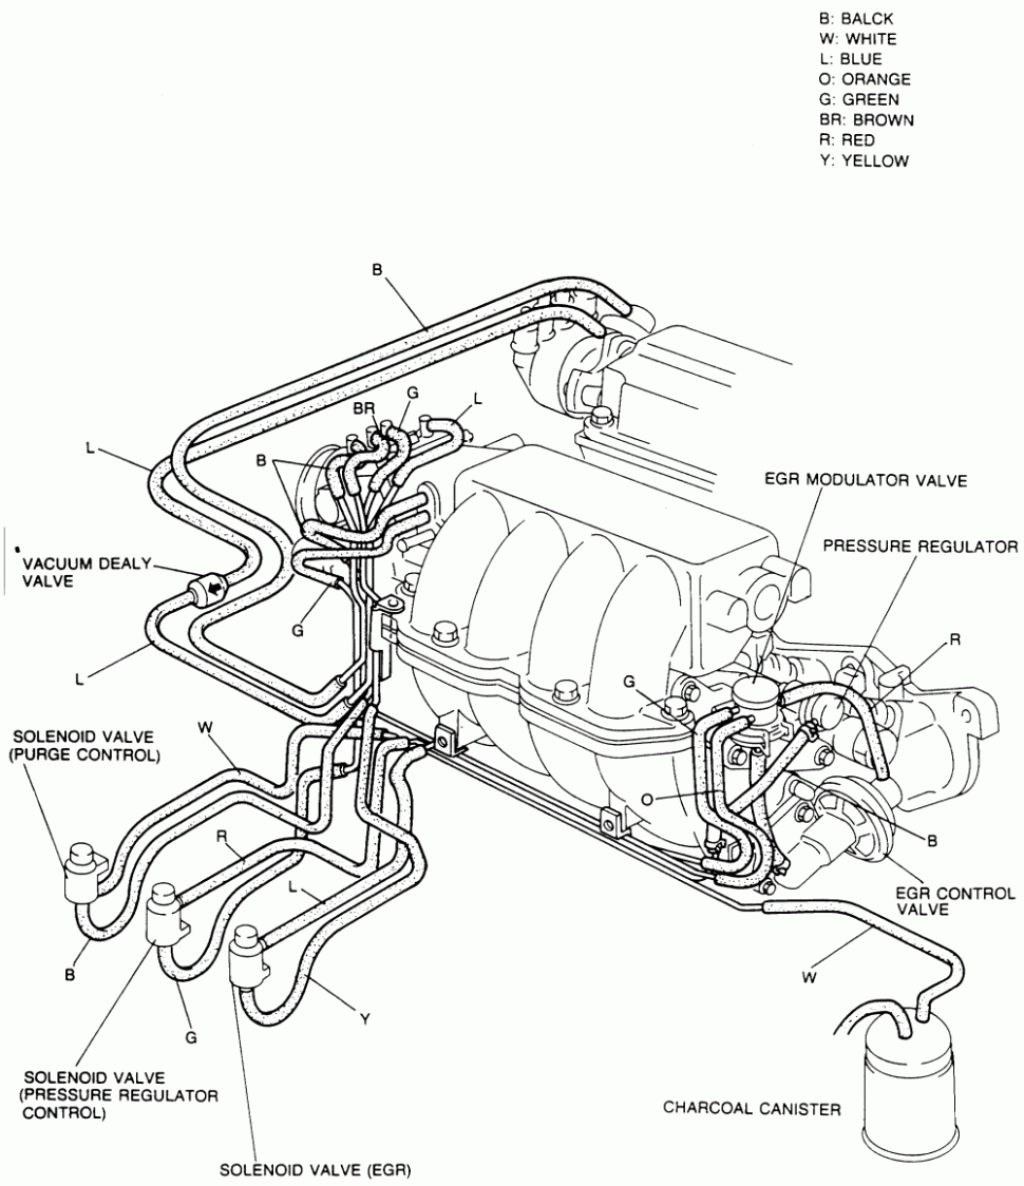 Picture of: Engine Diagram  Ford Escape Turbo  Ford escape, Ford, Diagram